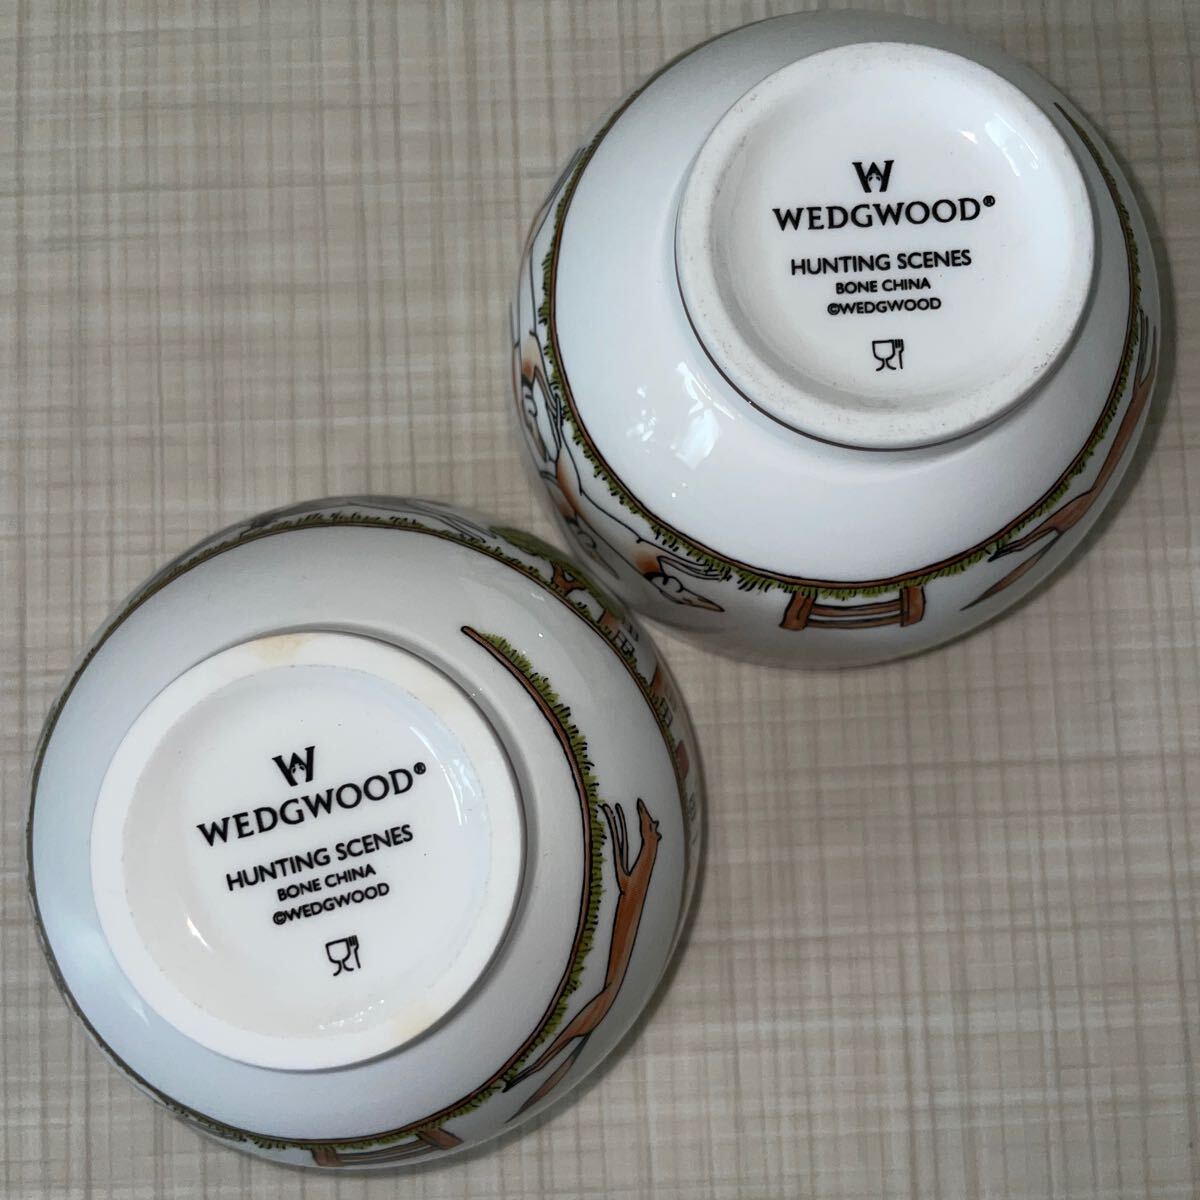  быстрое решение! прекрасный товар # Wedgwood охота scene japa потребности cup пара # кружка 